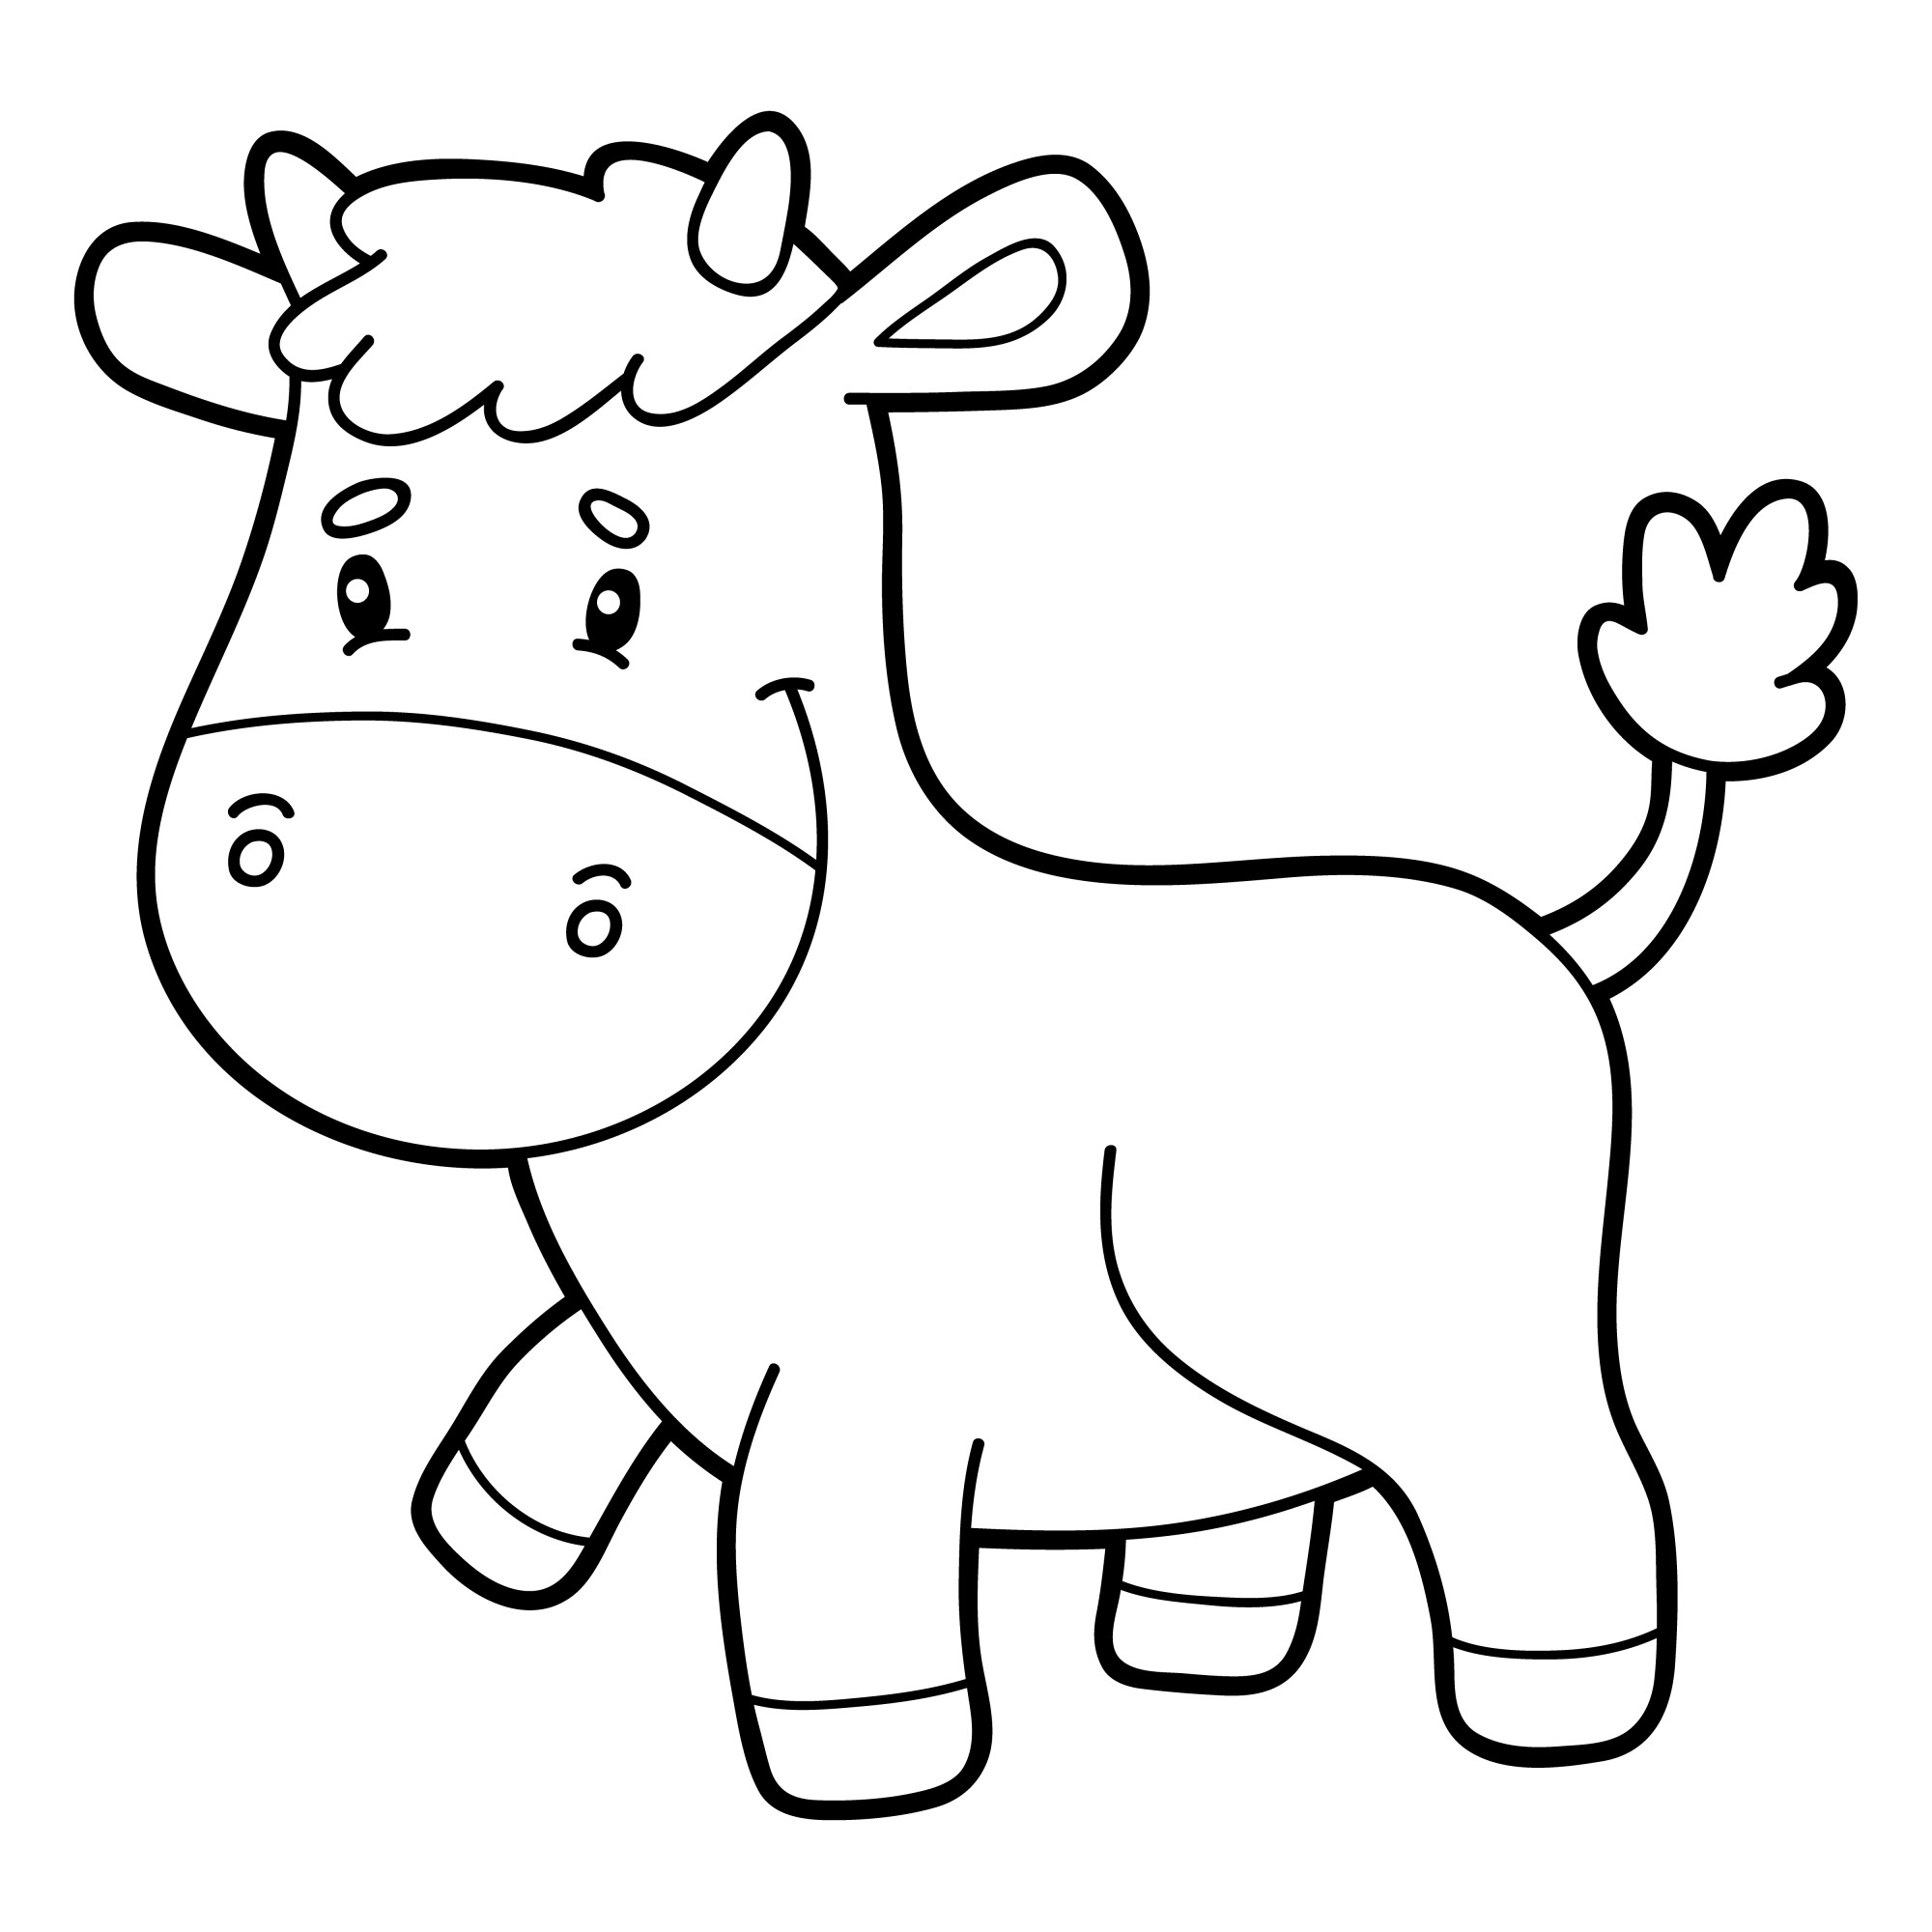 Раскраска для детей: теленок играется